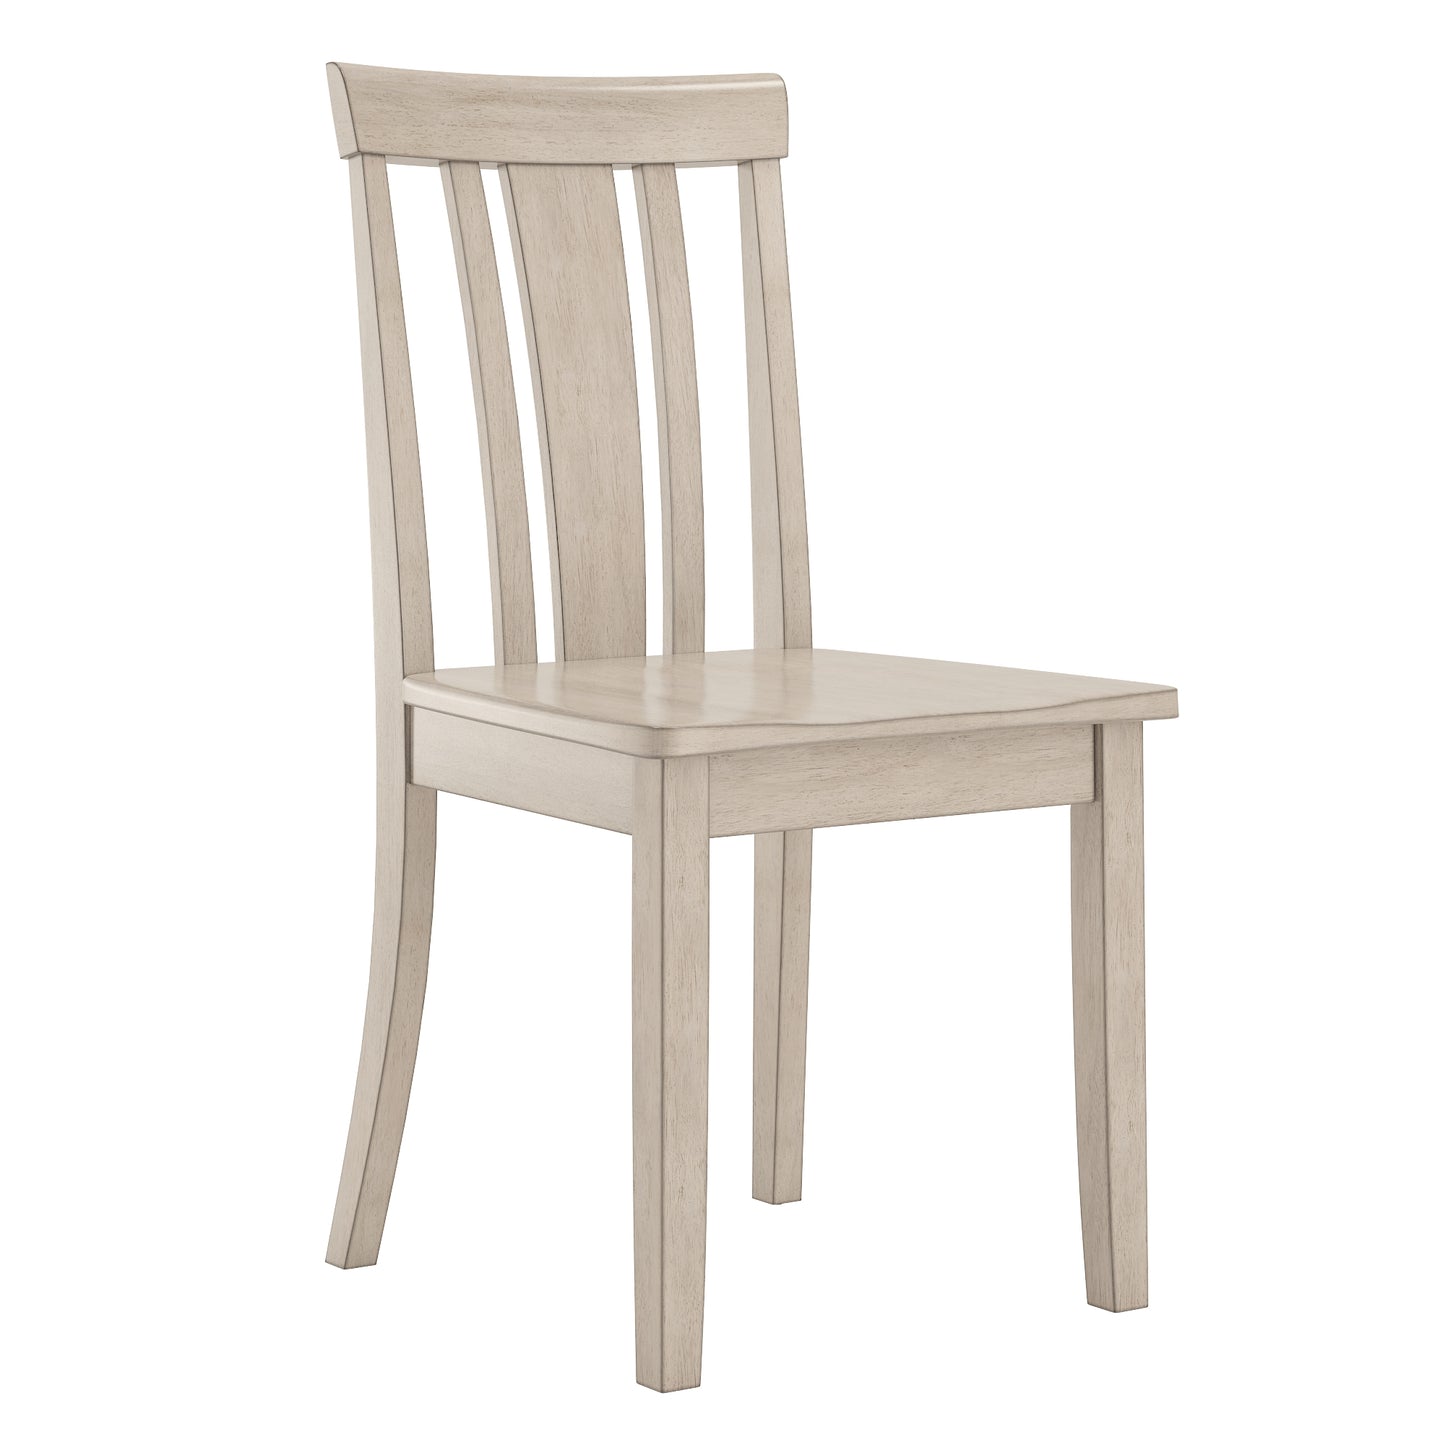 60-inch Rectangular Antique White Finish Dining Set - Slat Back Chairs, 7-Piece Set